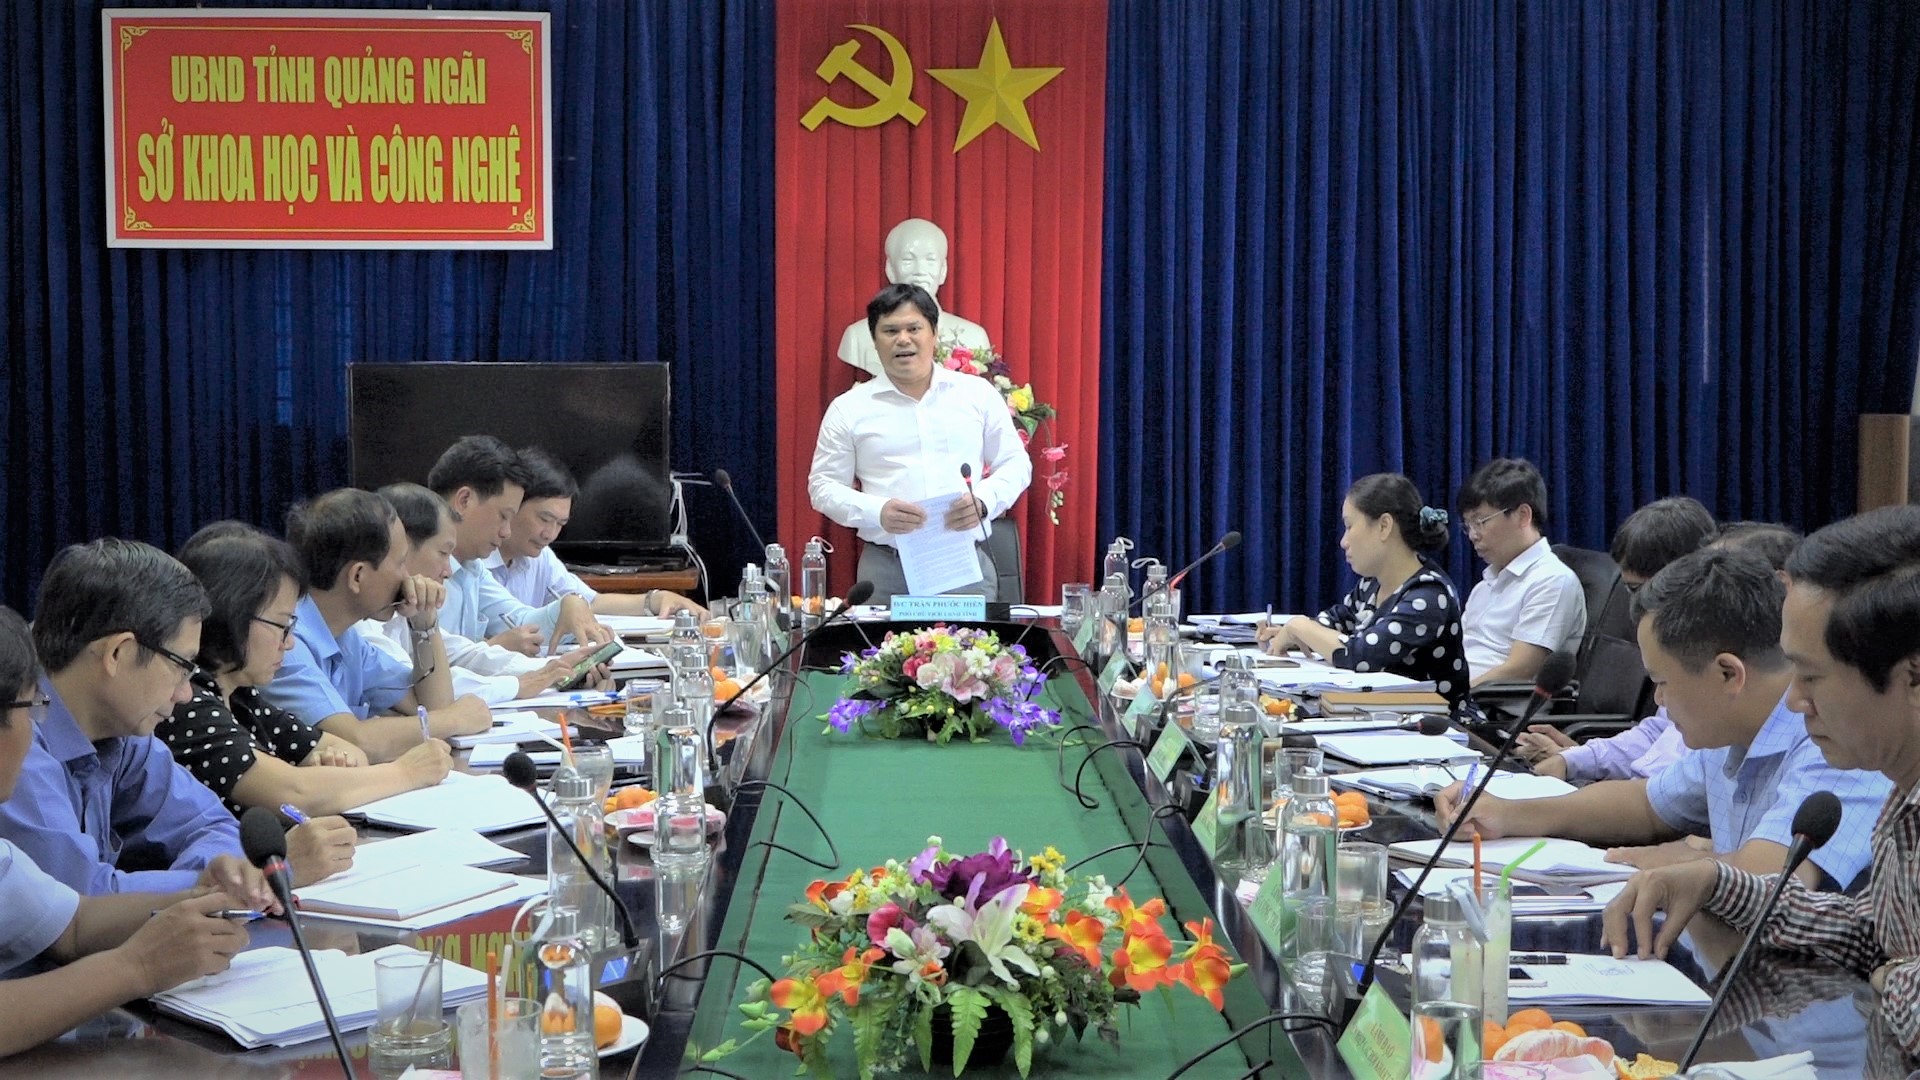 Phó Chủ tịch UBND tỉnh Trần Phước Hiền về làm việc với Sở Khoa học và Công nghệ về triển khai nhiệm vụ trọng tâm trong năm 2021.